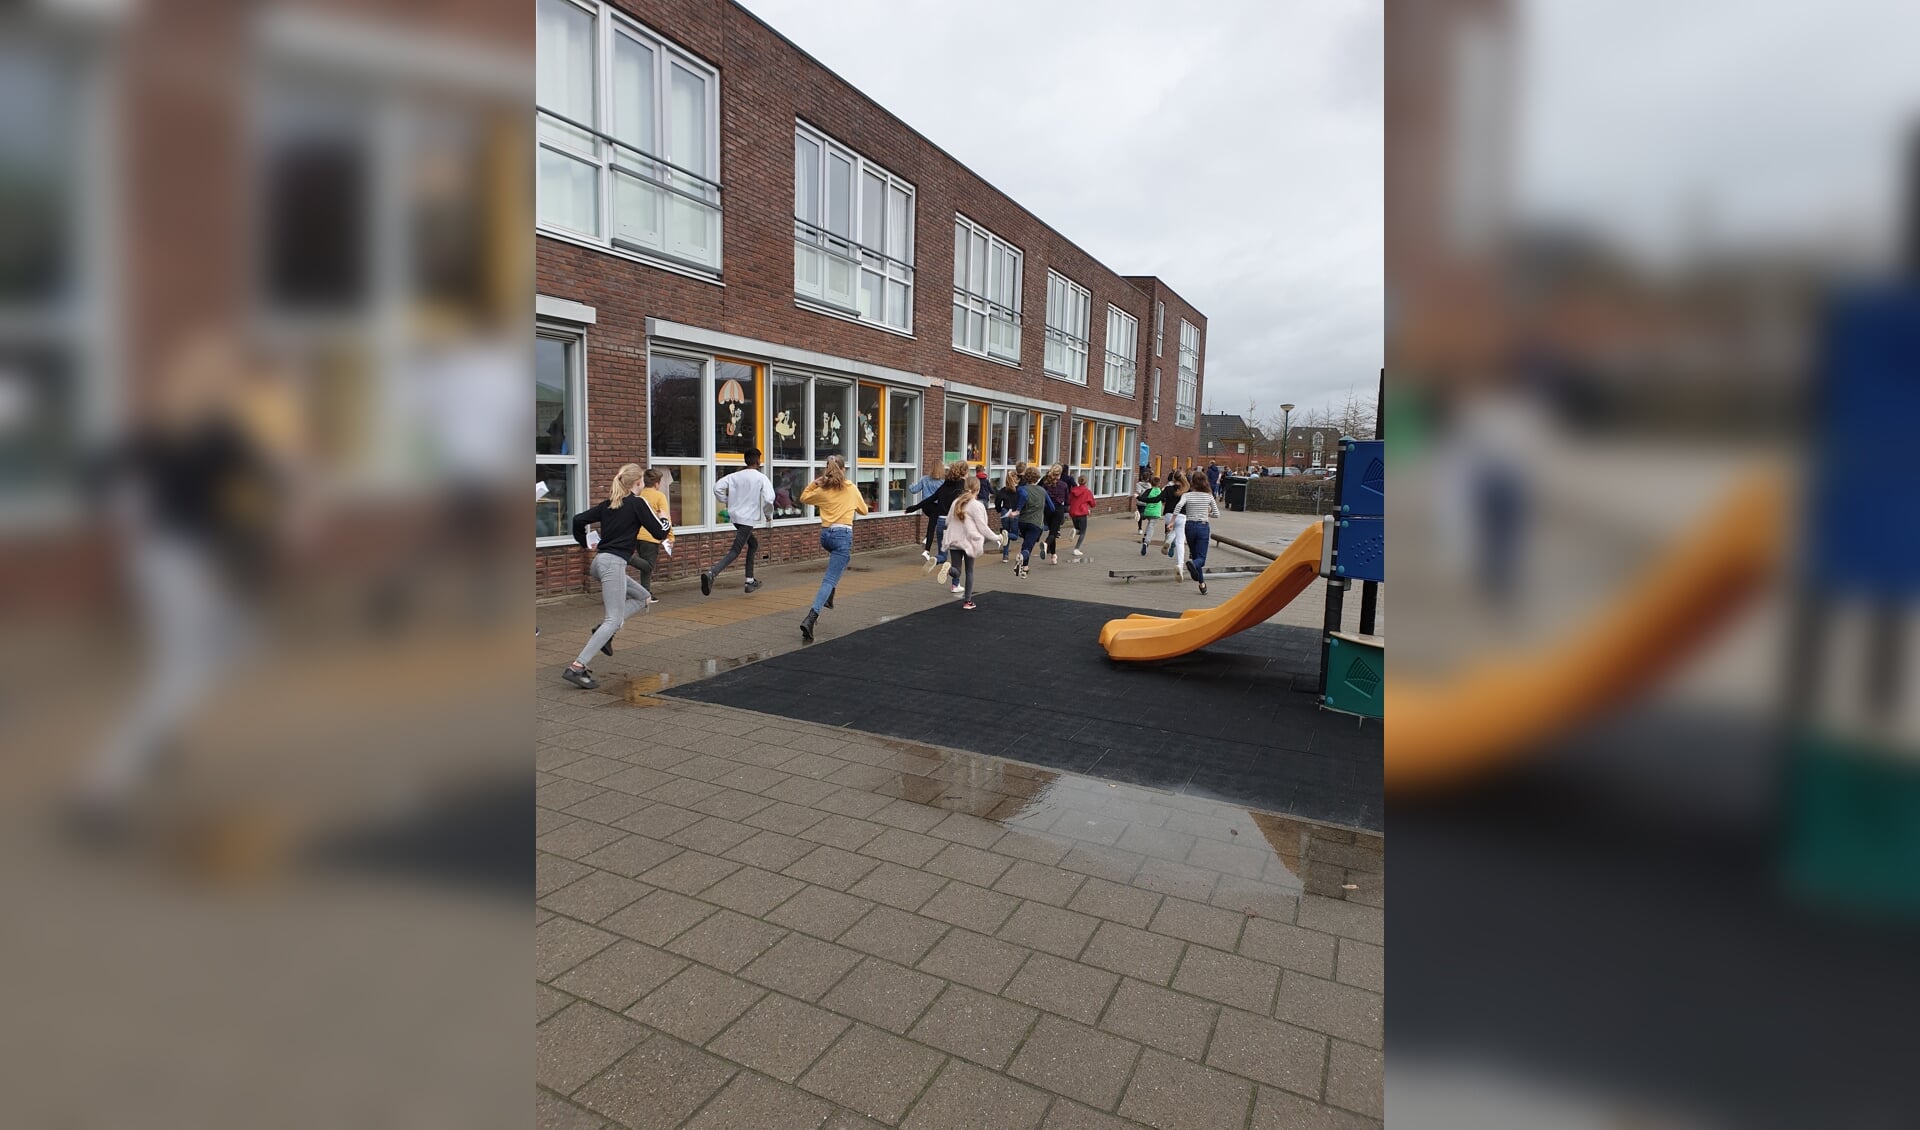 https://www.houtensnieuws.nl/nieuws/algemeen/678453/houtense-basisschool-de-vlinder-in-schoolquarantaine-na-corona-uitbraak